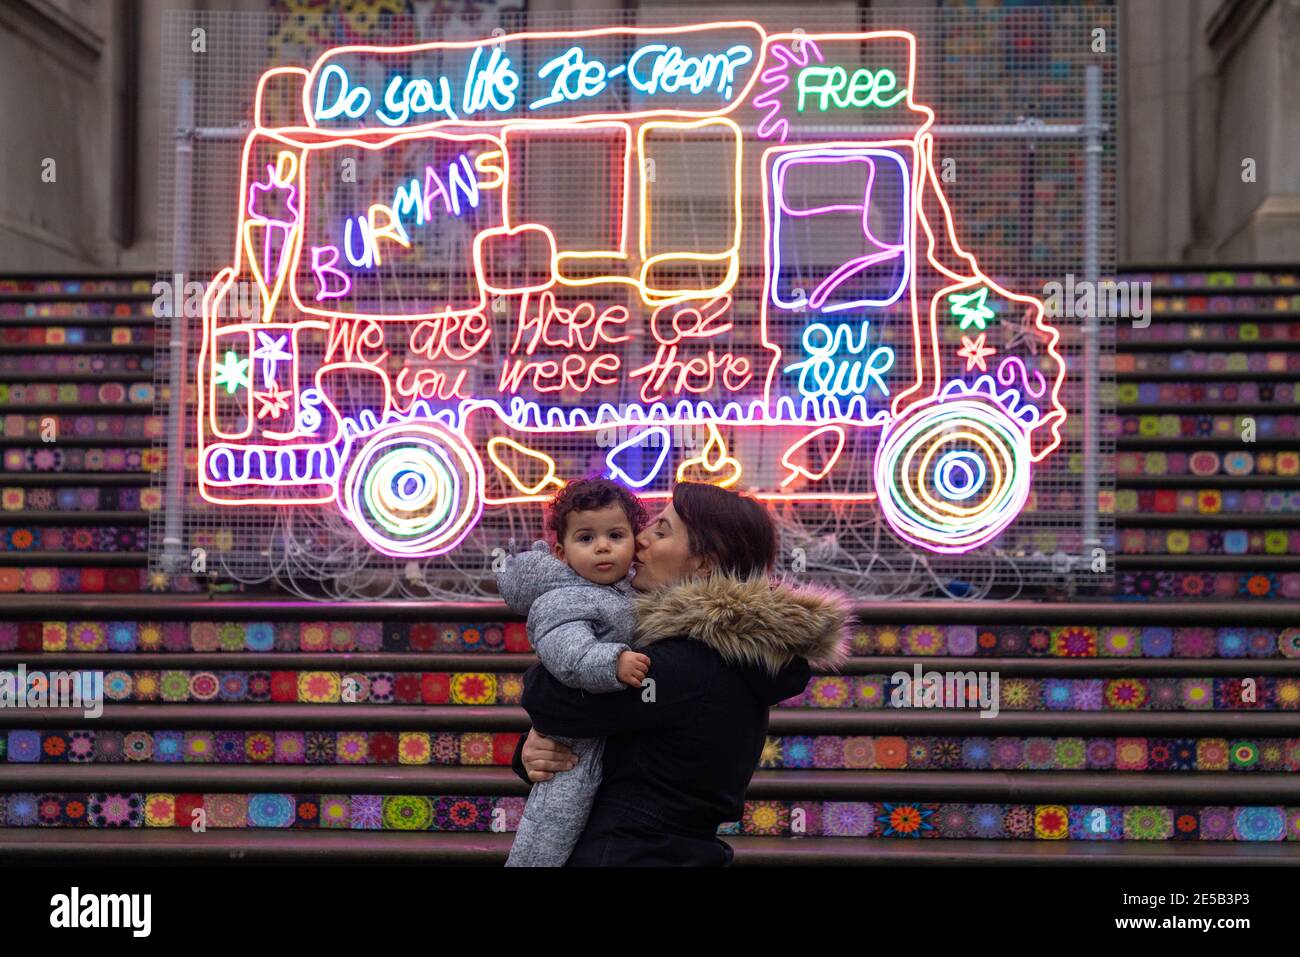 Andrea Tyrimos y su hijo Koa ven 'Remembering a Brave New World' por Chila Kumari Singh Burman, fuera de Tate Britain en Londres durante el tercer cierre nacional de Inglaterra para frenar la propagación del coronavirus. Foto fecha: Miércoles 27 de enero de 2021. Foto de stock